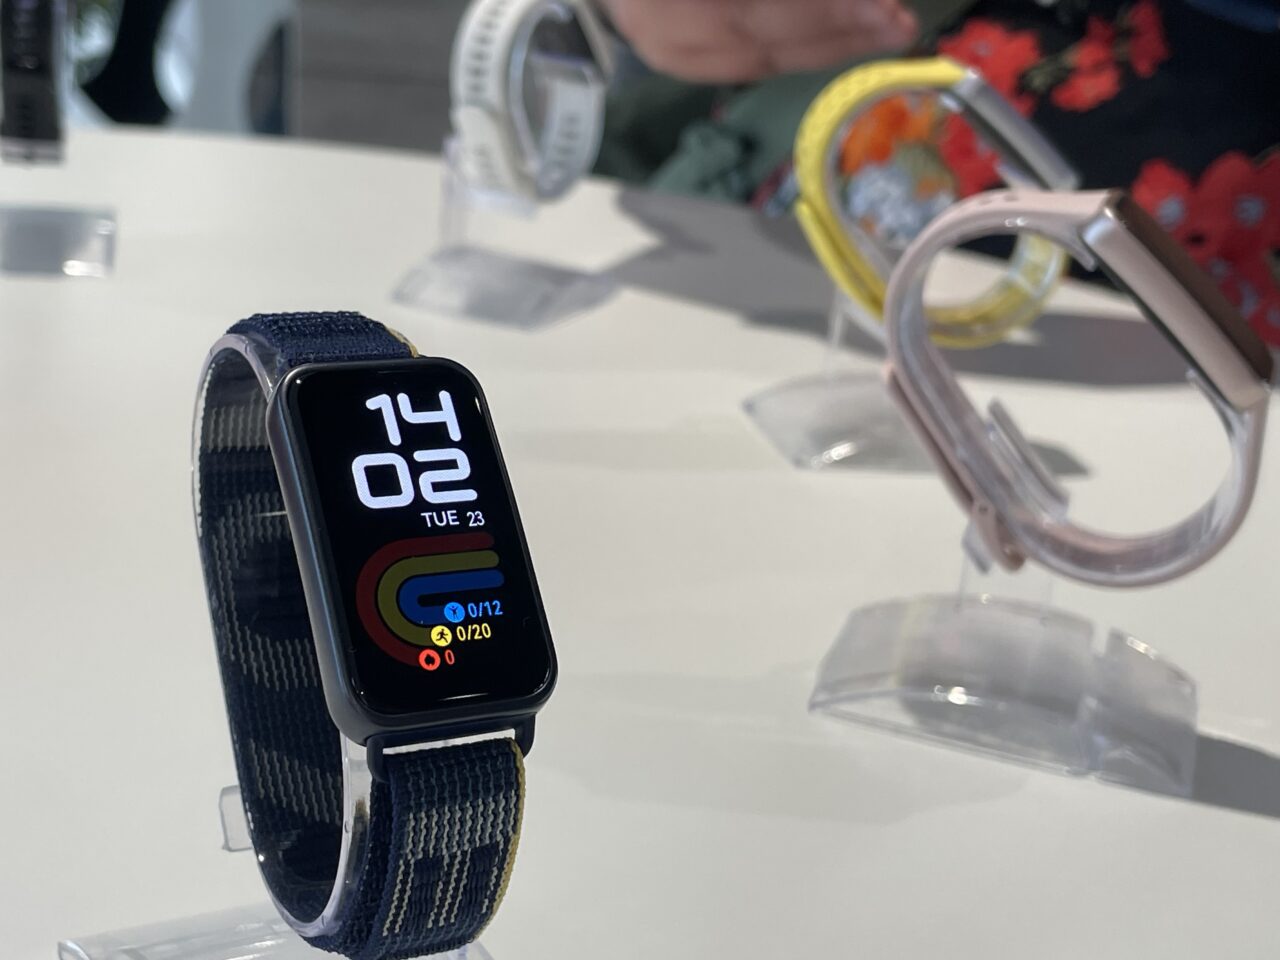 Smartwatch na nadgarstku z niebieskim paskiem, pokazujący czas i aktywność, na tle innych zegarków.